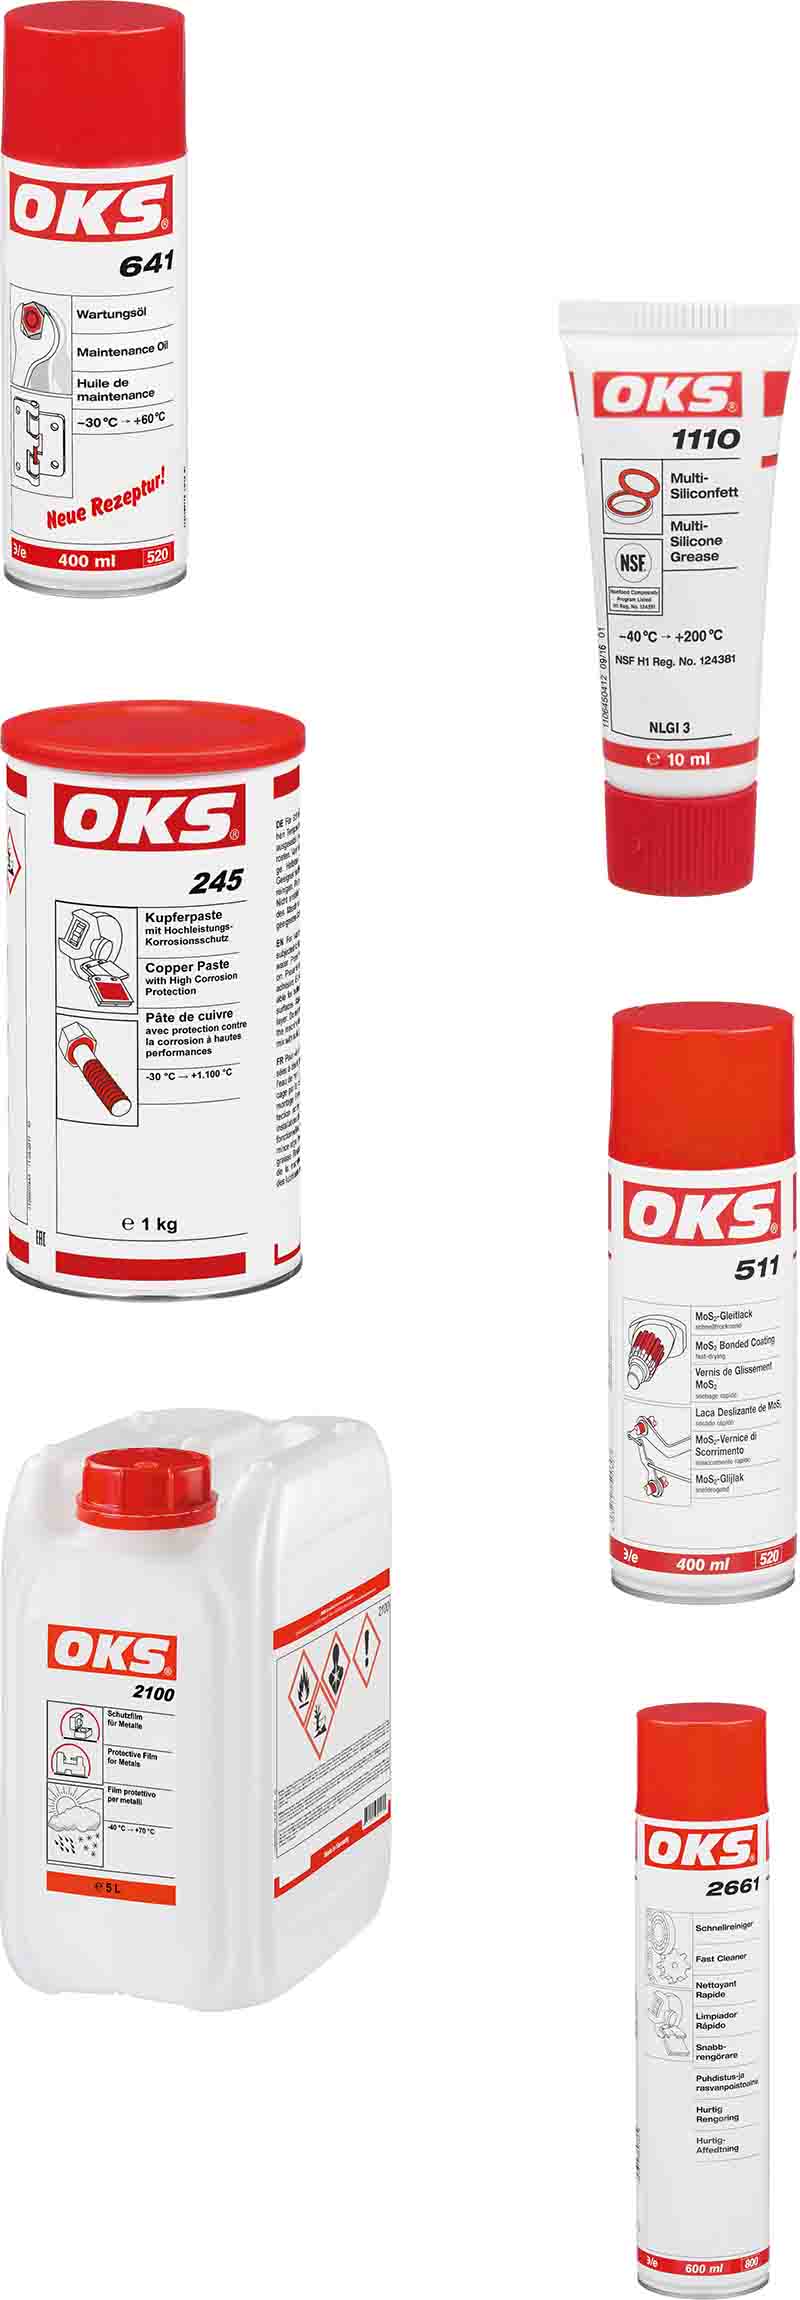 Bilder von OKS-Produkten